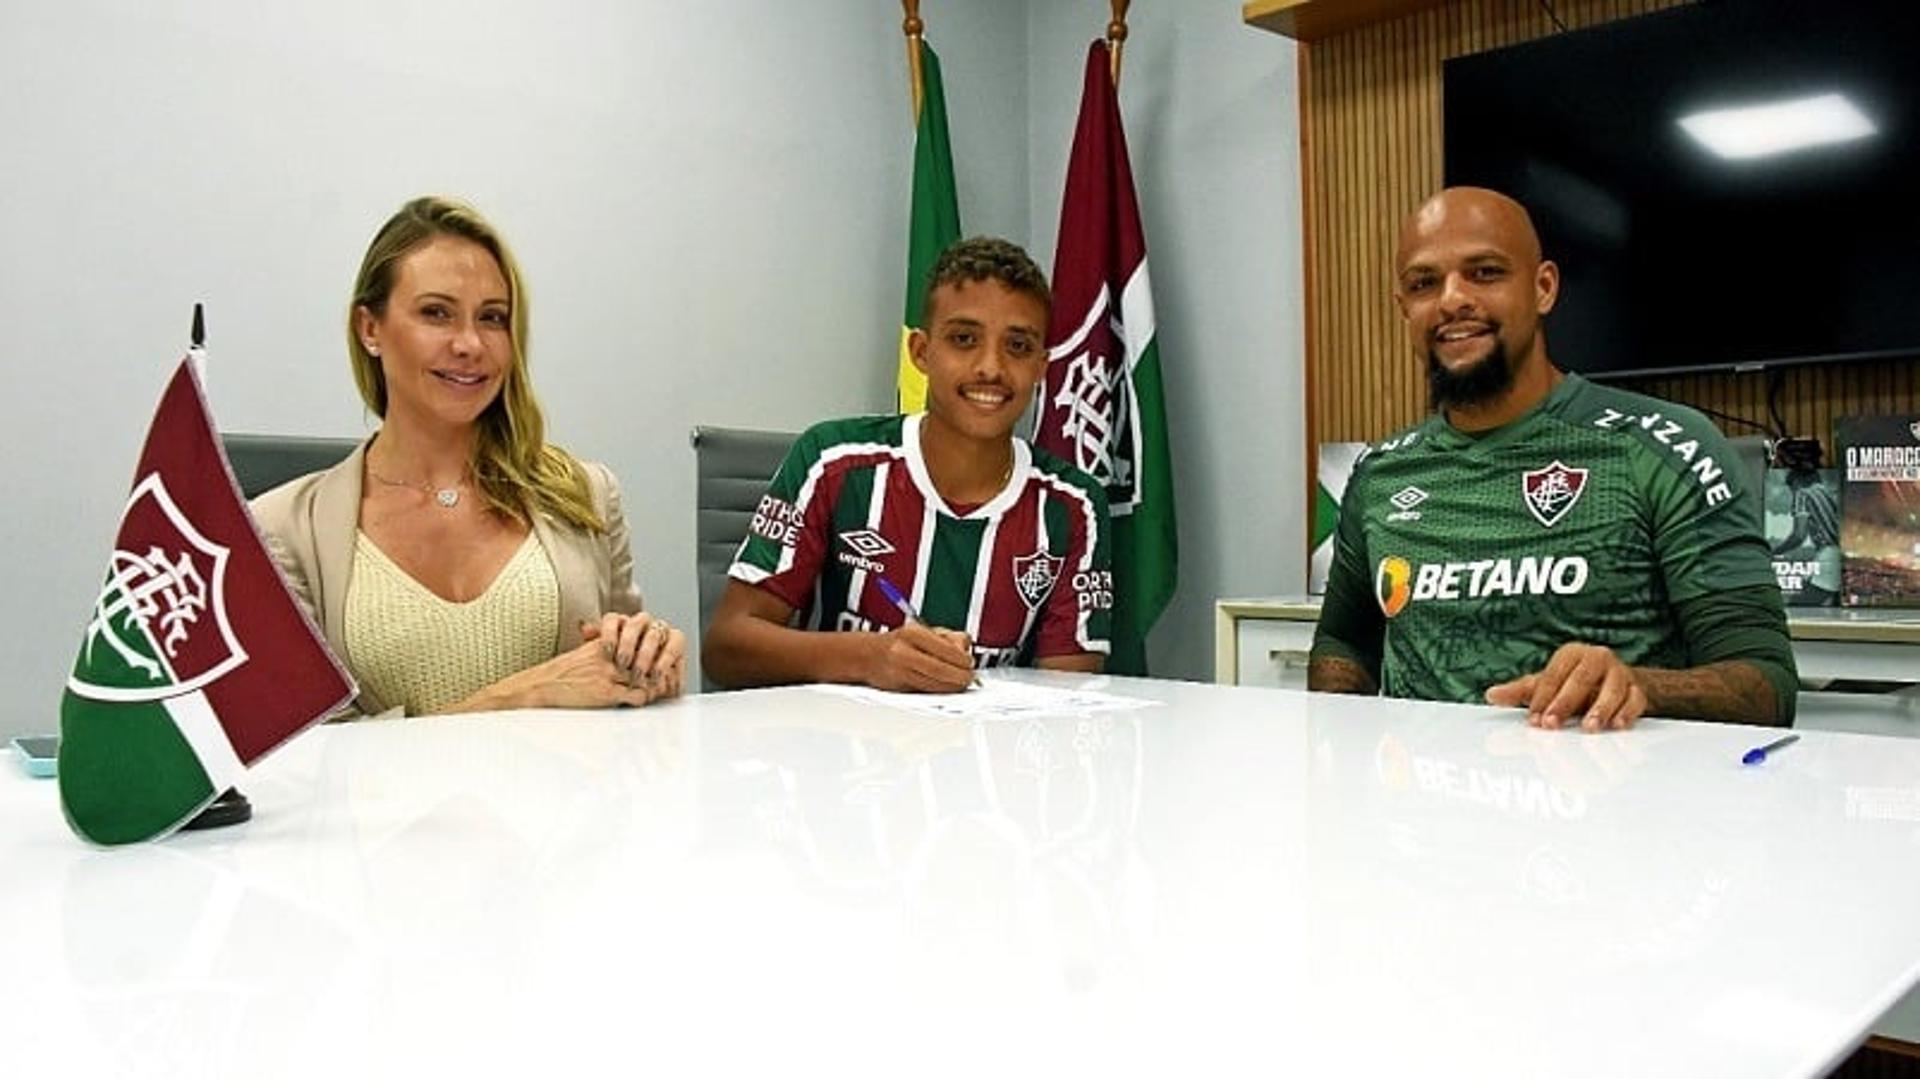 Davi Melo - Fluminense